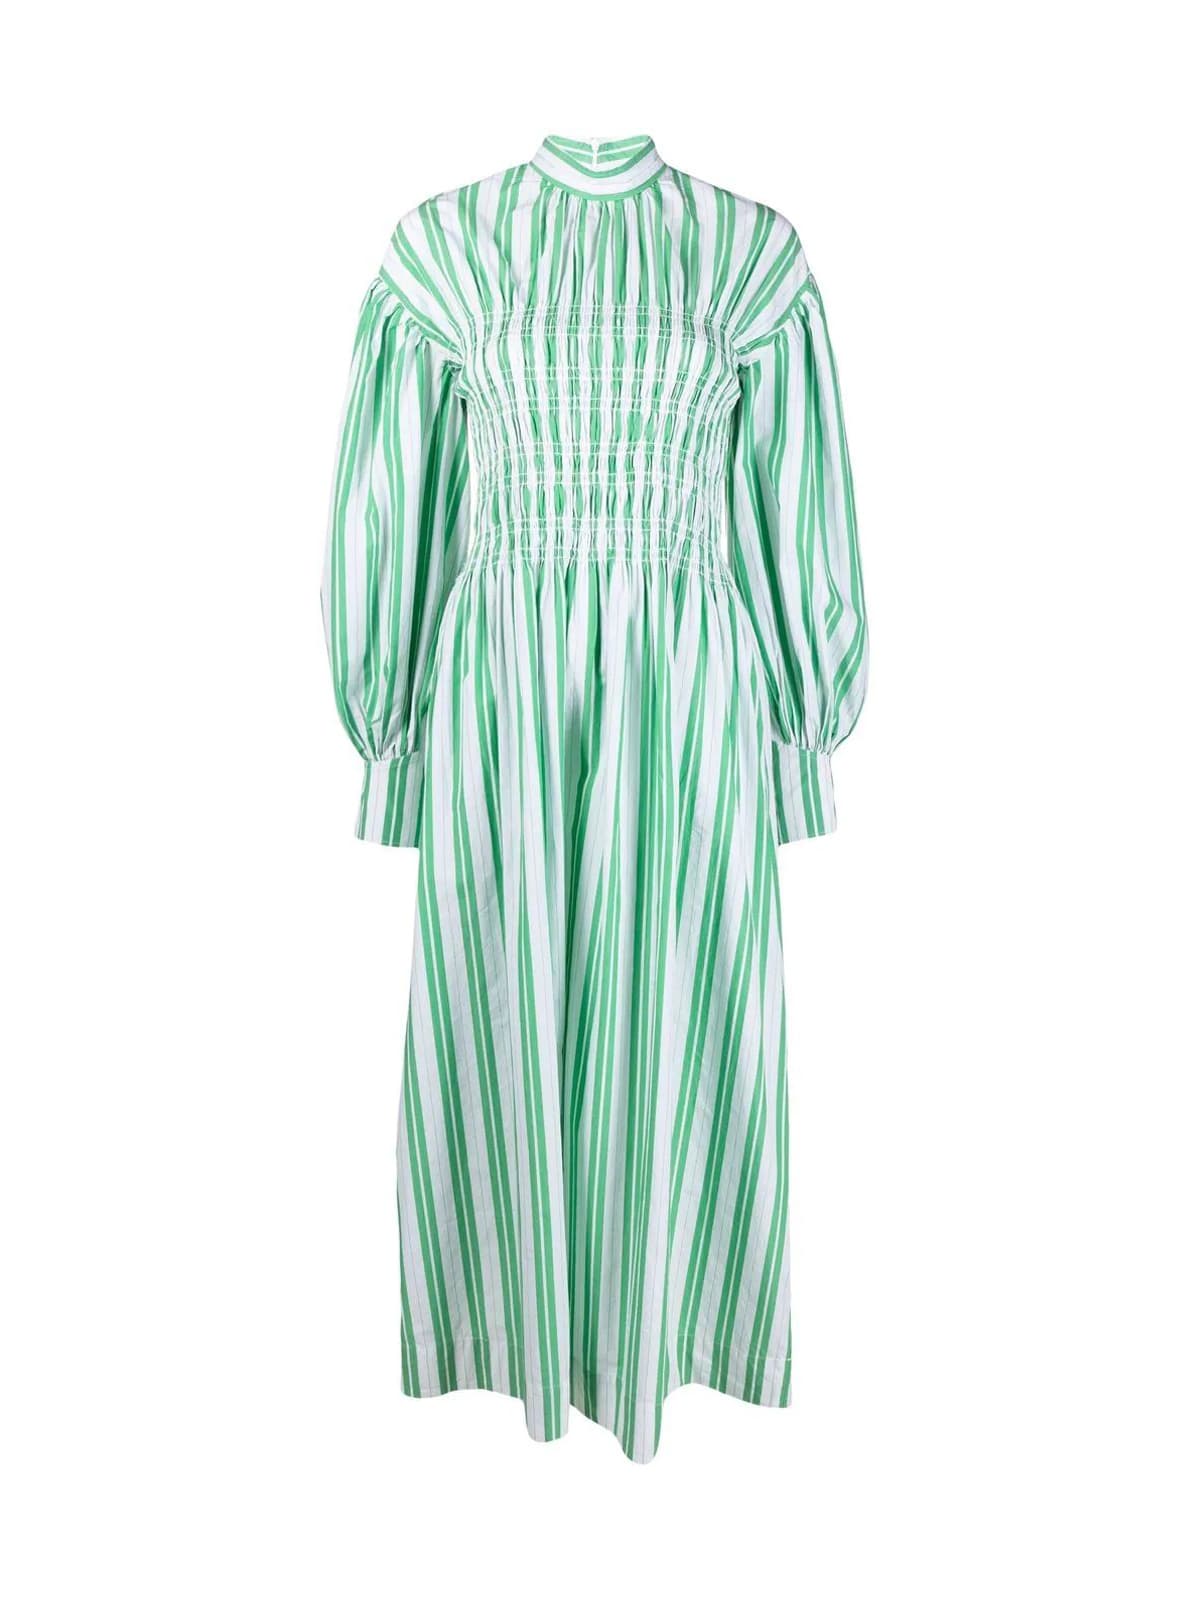 Ganni Striped Stretch Long Dress | Coshio Online Shop